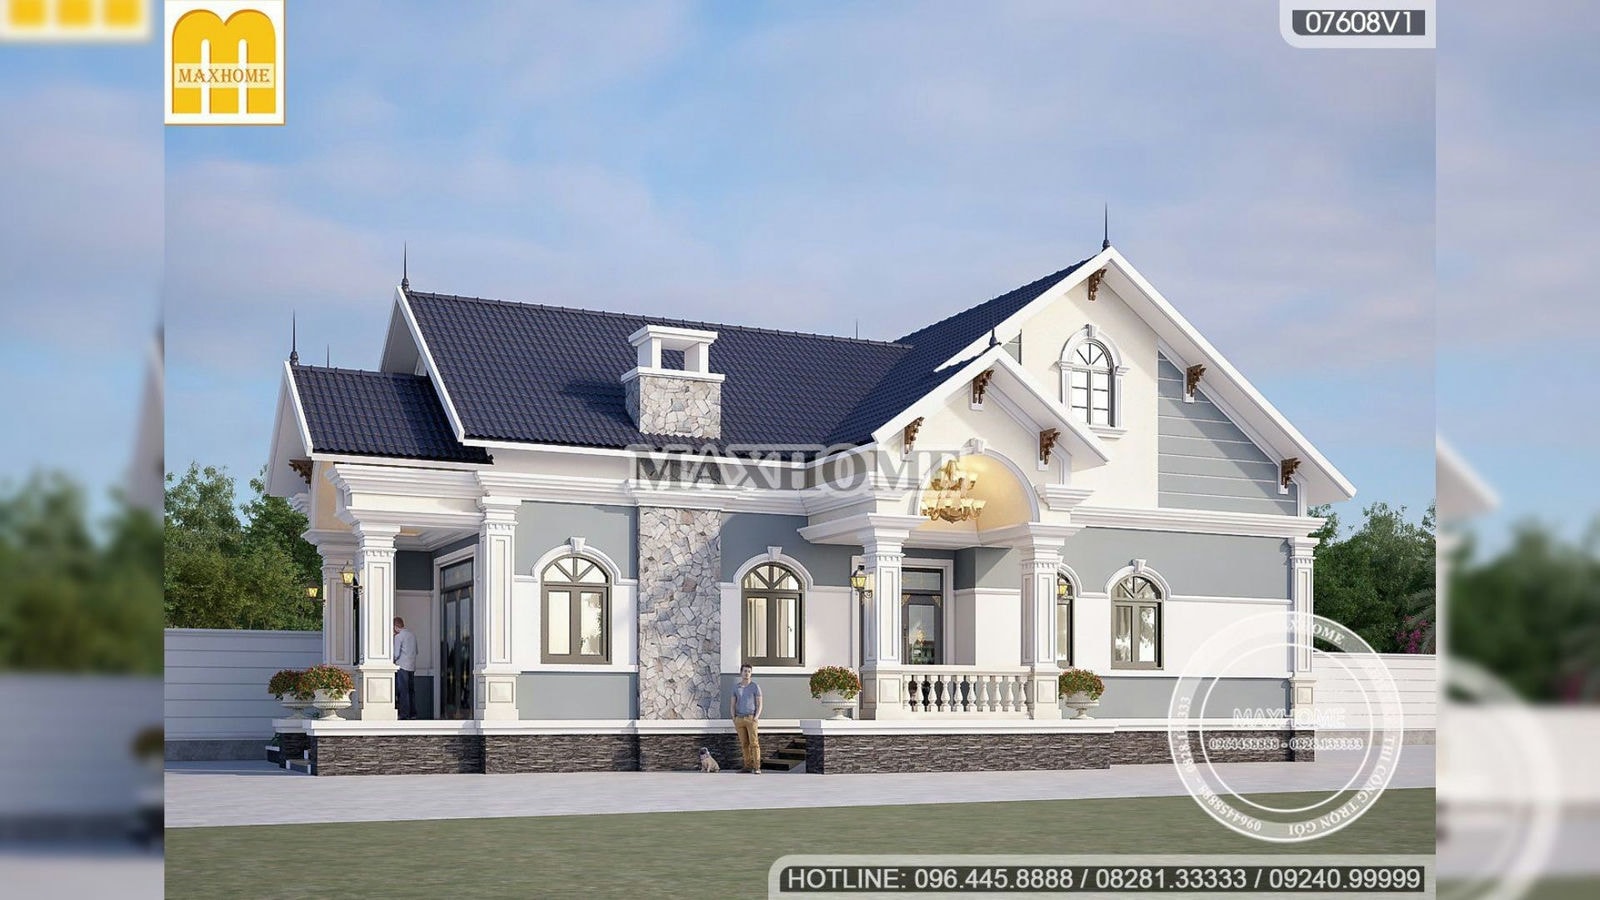 TINH GỌN và SANG TRỌNG với mẫu nhà mái Thái giá chỉ từ 900 triệu | MH01952